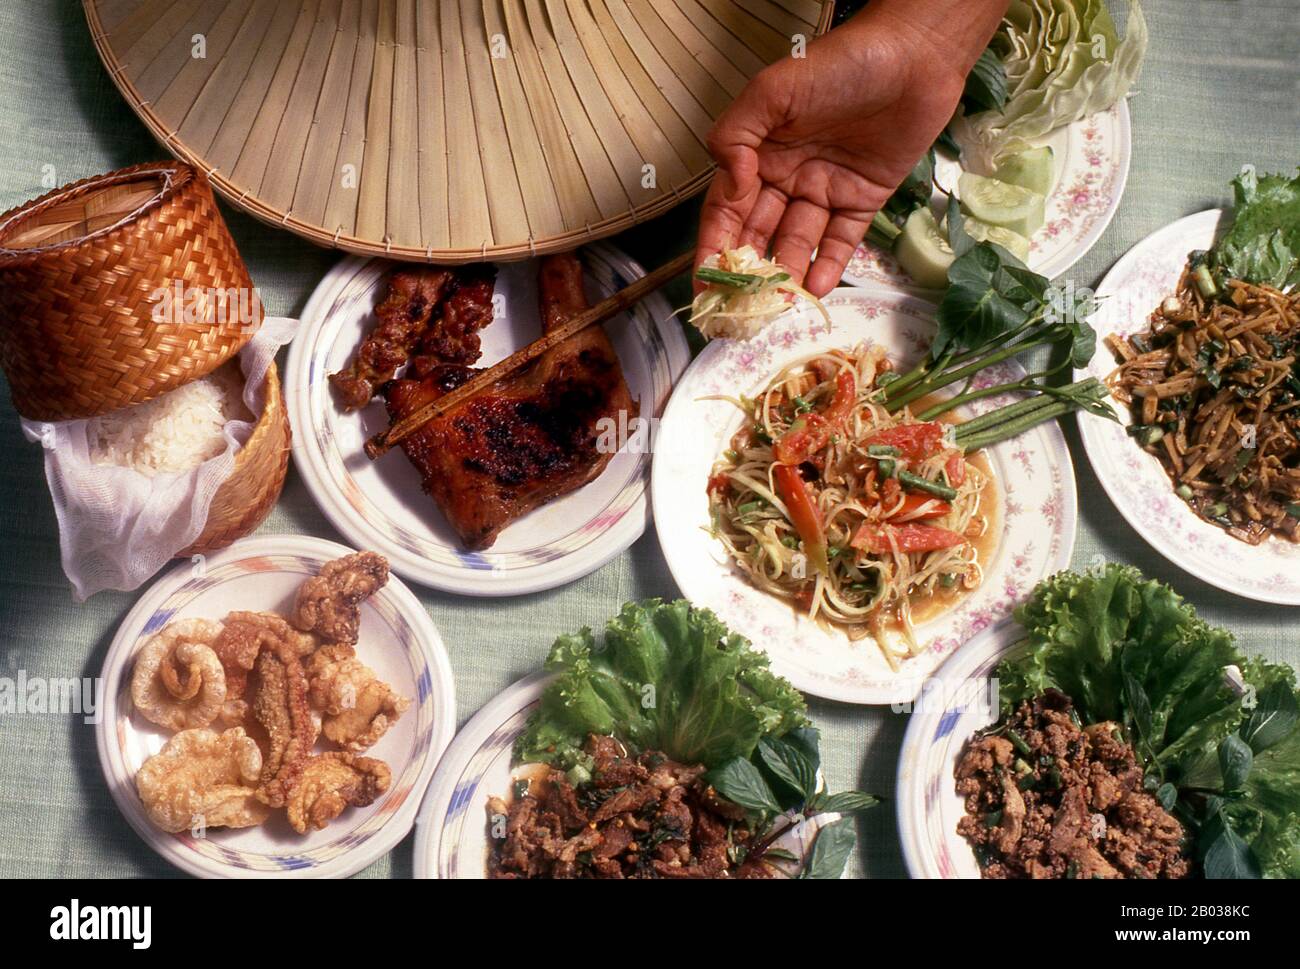 Die nordöstliche thailändische und laotische Küche ist im Allgemeinen die einfache, würzige, Bauernsorte, die die Einwohner dieser relativ armen Region genießen. Zu den bekanntesten Gerichten gehören Somtam - Papaya-Salat mit Fischsauce, Knoblauch, Chilipapern, Erdnüsse und Puu na Felskrabbe, die dem Geschmack hinzugefügt werden. Das wird oft mit kai Yang verzehrt - gegrilltes Huhn, das am besten aus Sisaket in der Nähe der Grenze zu Lao stammt. Der vielleicht klassischste von Isaan-Gerichten ist Larb - gewürztes Hackfleisch, das in der Regel mit Salat und einer Beilage aus rohem Gemüse serviert wird. Im Gegensatz zu Bangkok und dem Süden, khao Niaw, oder "stickiger Reis Stockfoto